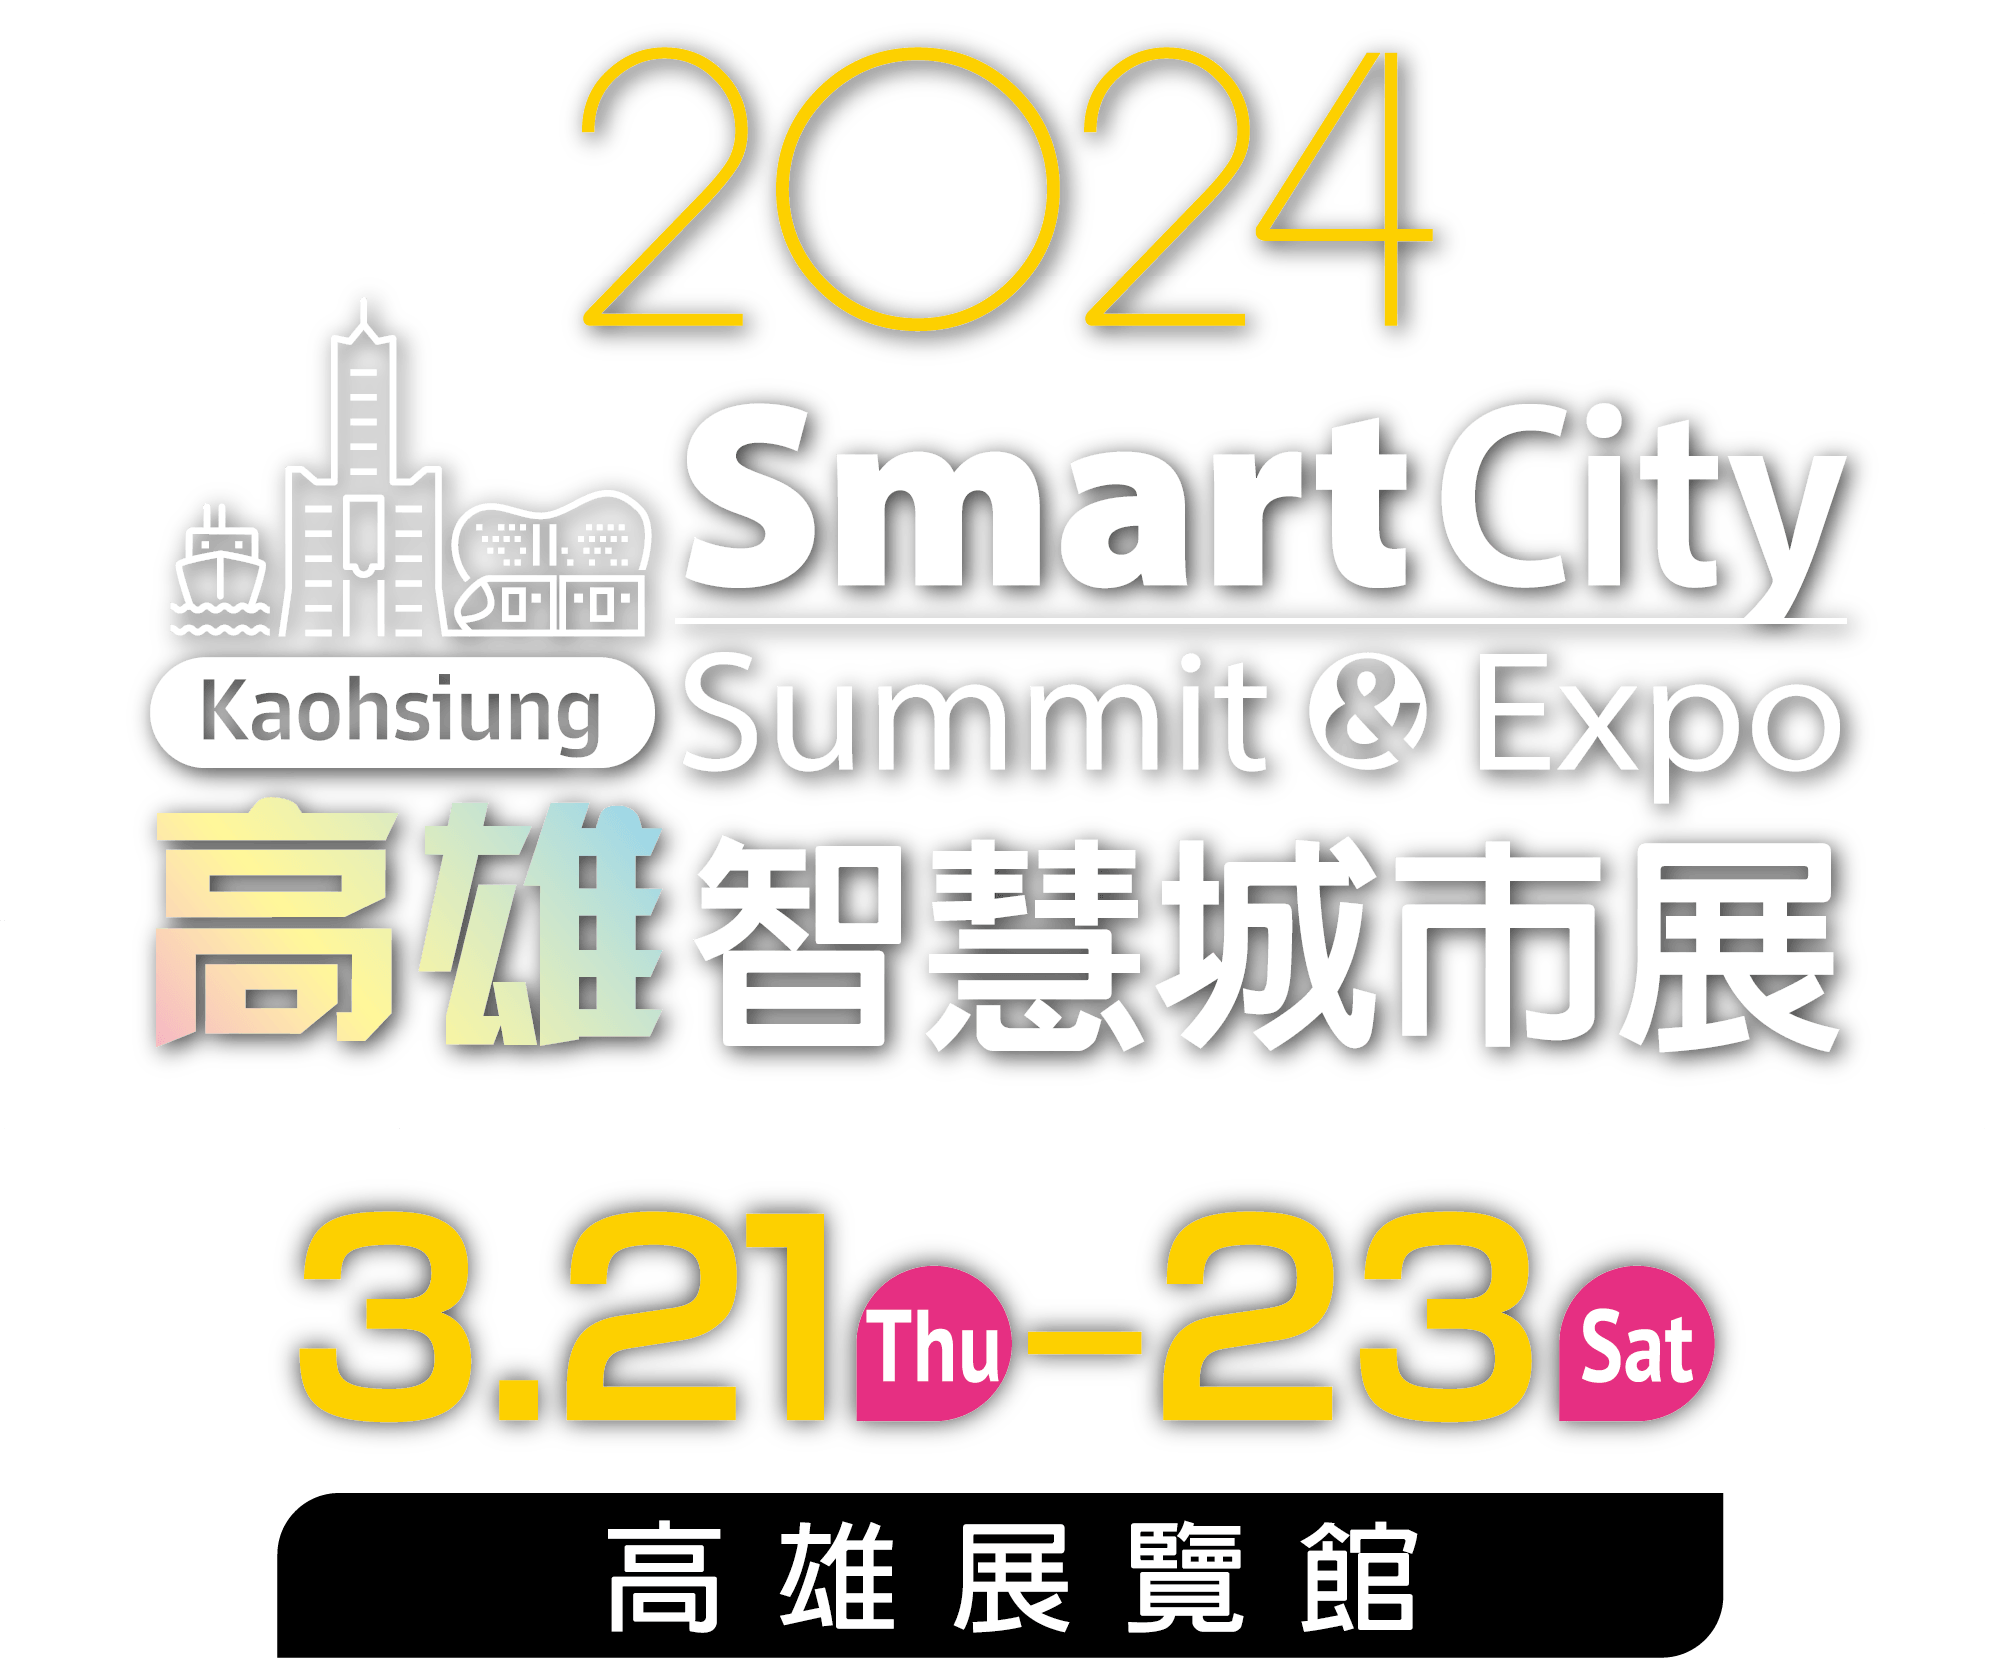 【活動分享】2024智慧城市展/淨零城市展北高展覽與系列論壇熱烈報名中!